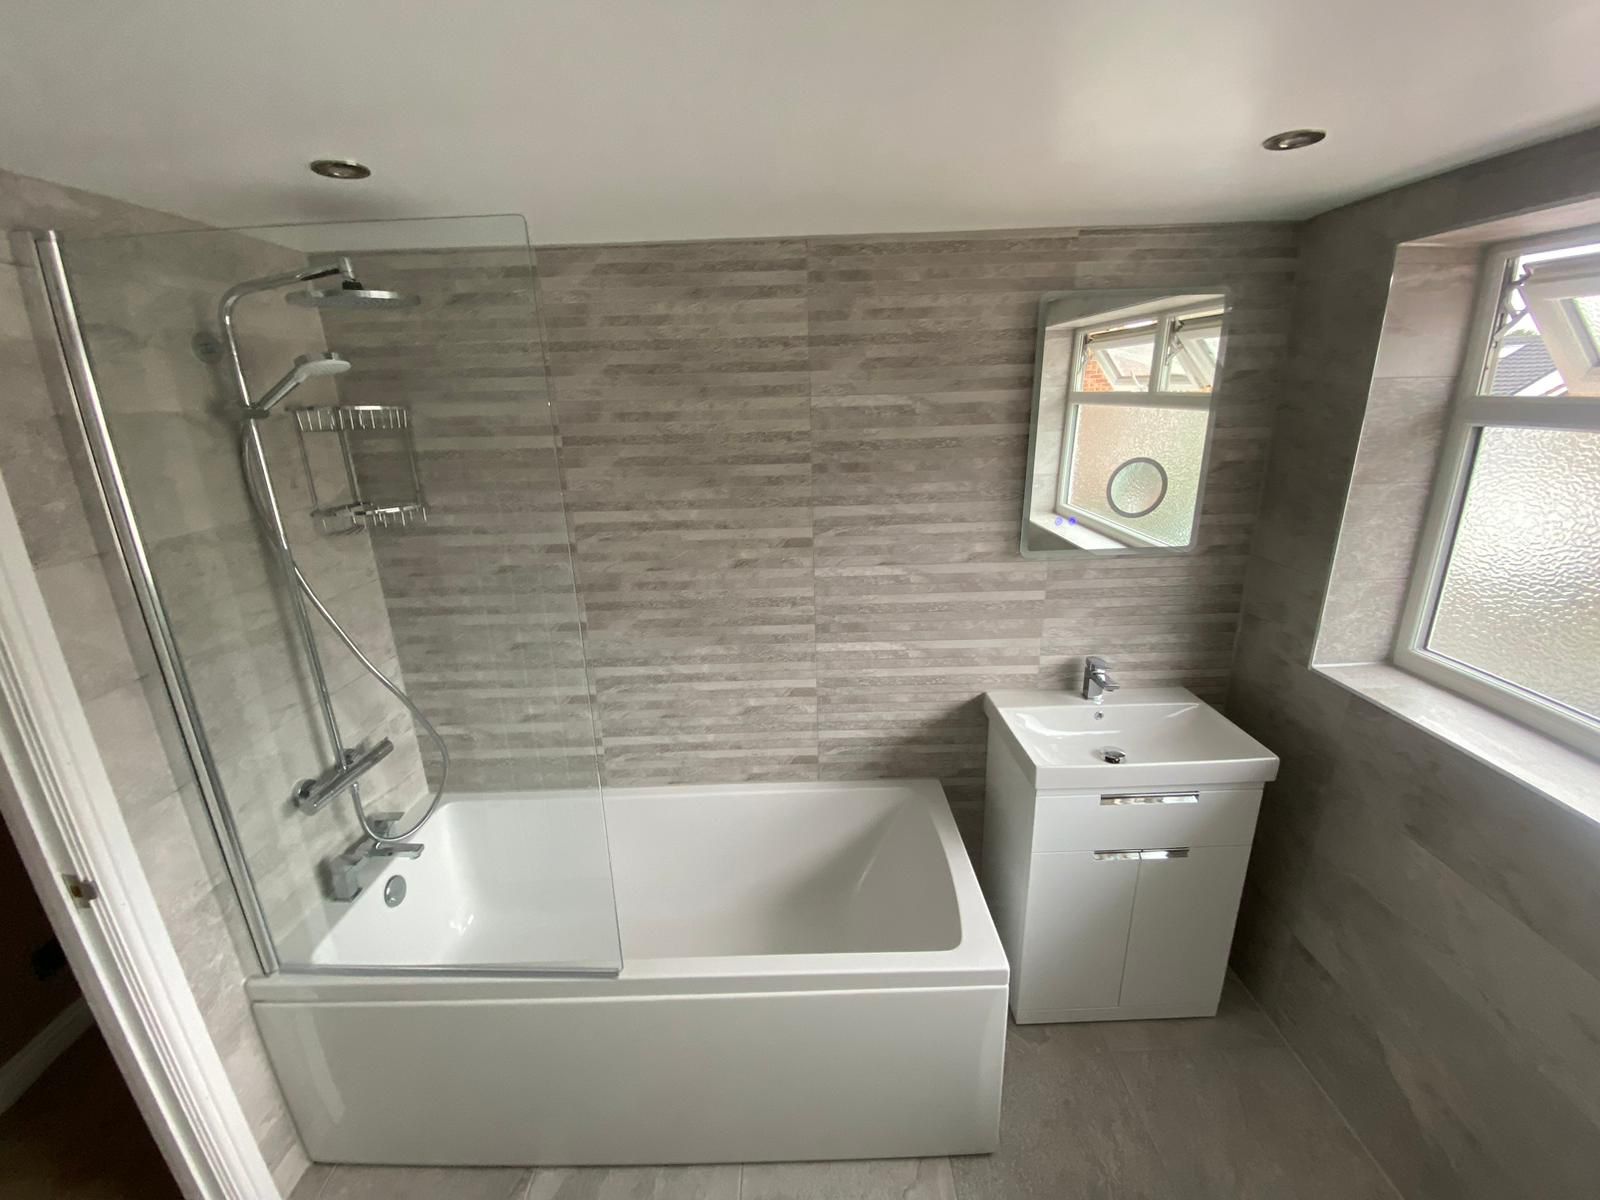 (c) Bathrooms-birmingham.co.uk